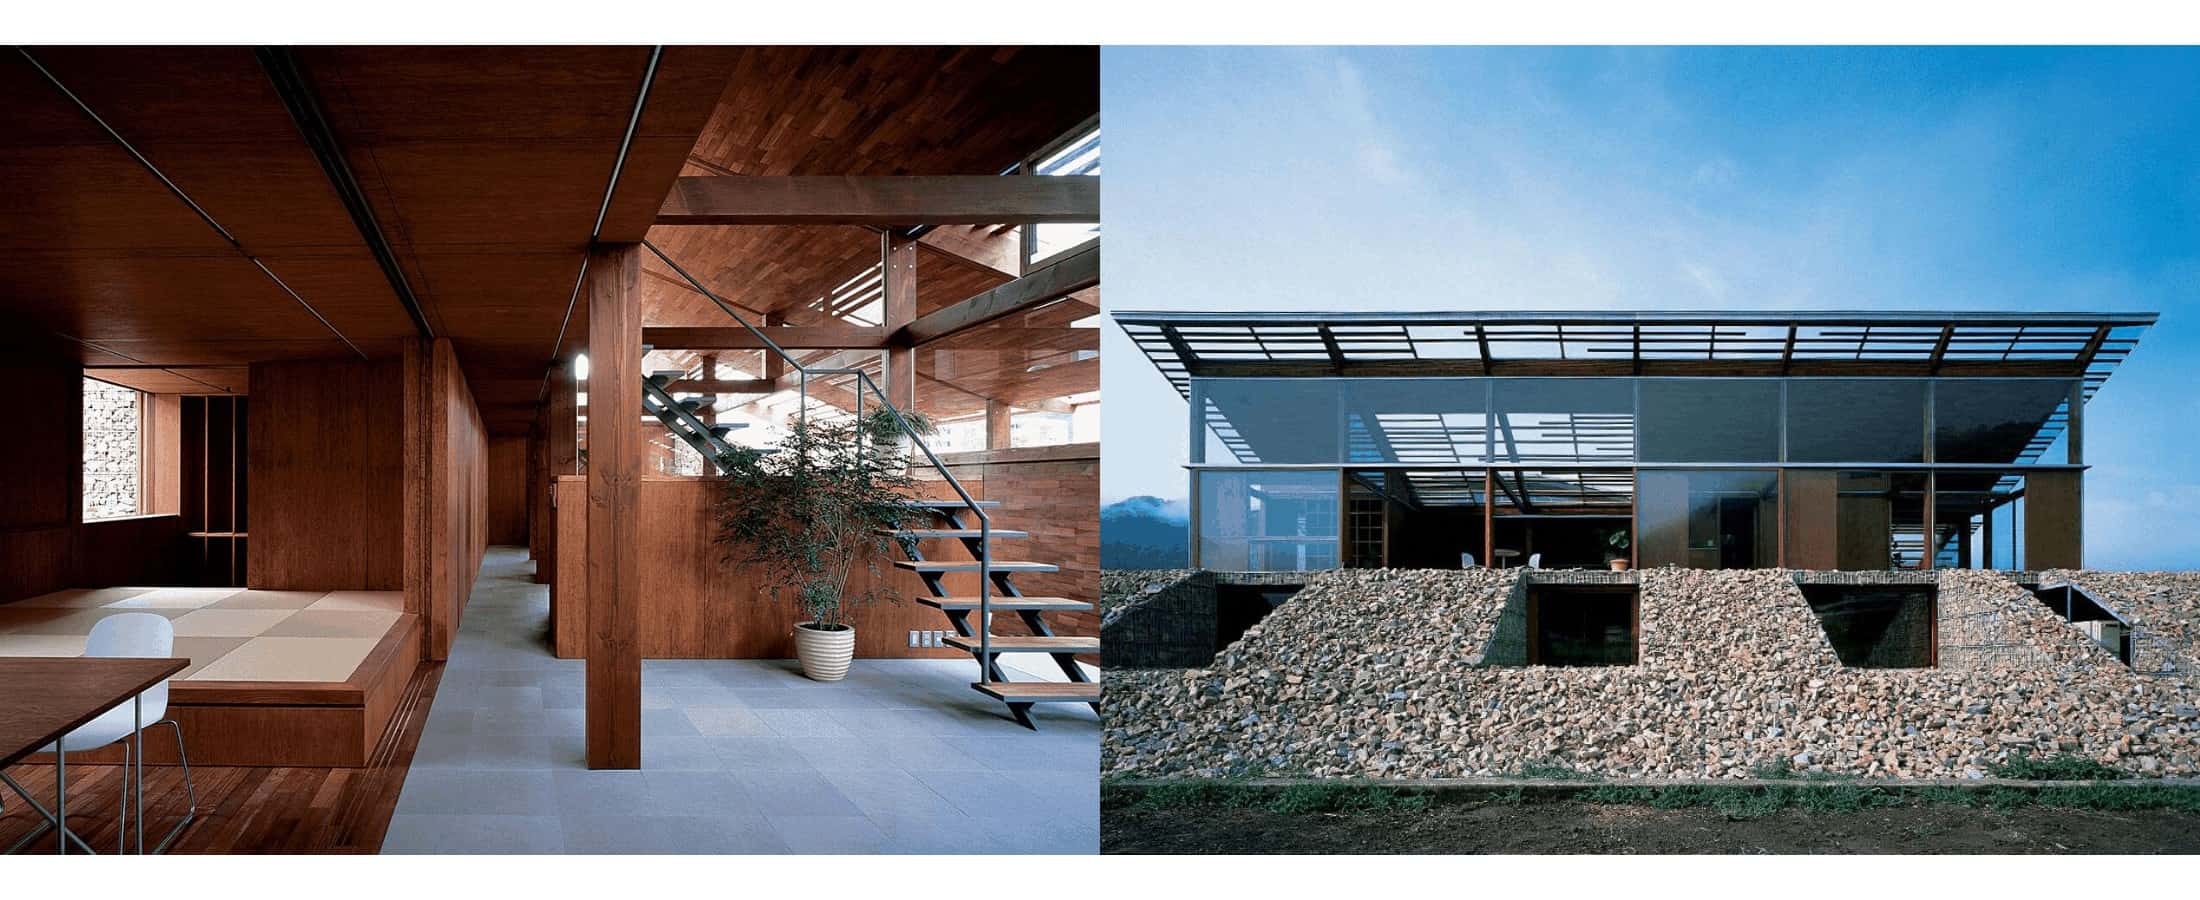 Hiroshi Sambuichi's Stone House | OLEDWorks